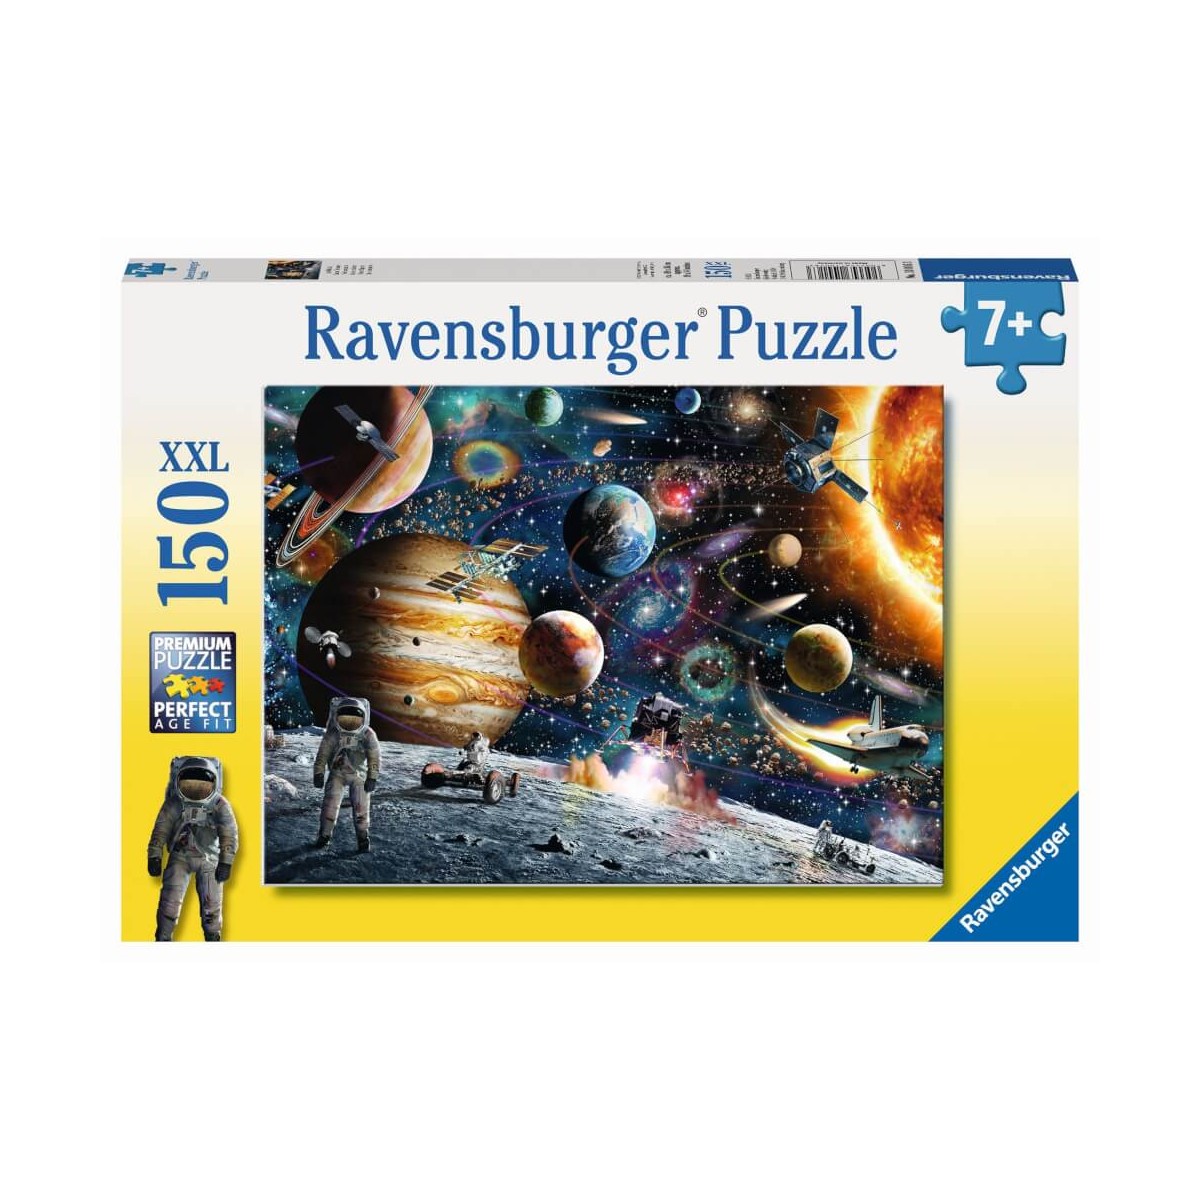 Ravensburger Kinderpuzzle - 10016 Im Weltall - Weltraum-Puzzle für Kinder  ab 7 Jahren, mit 150 Teilen im XXL-Format